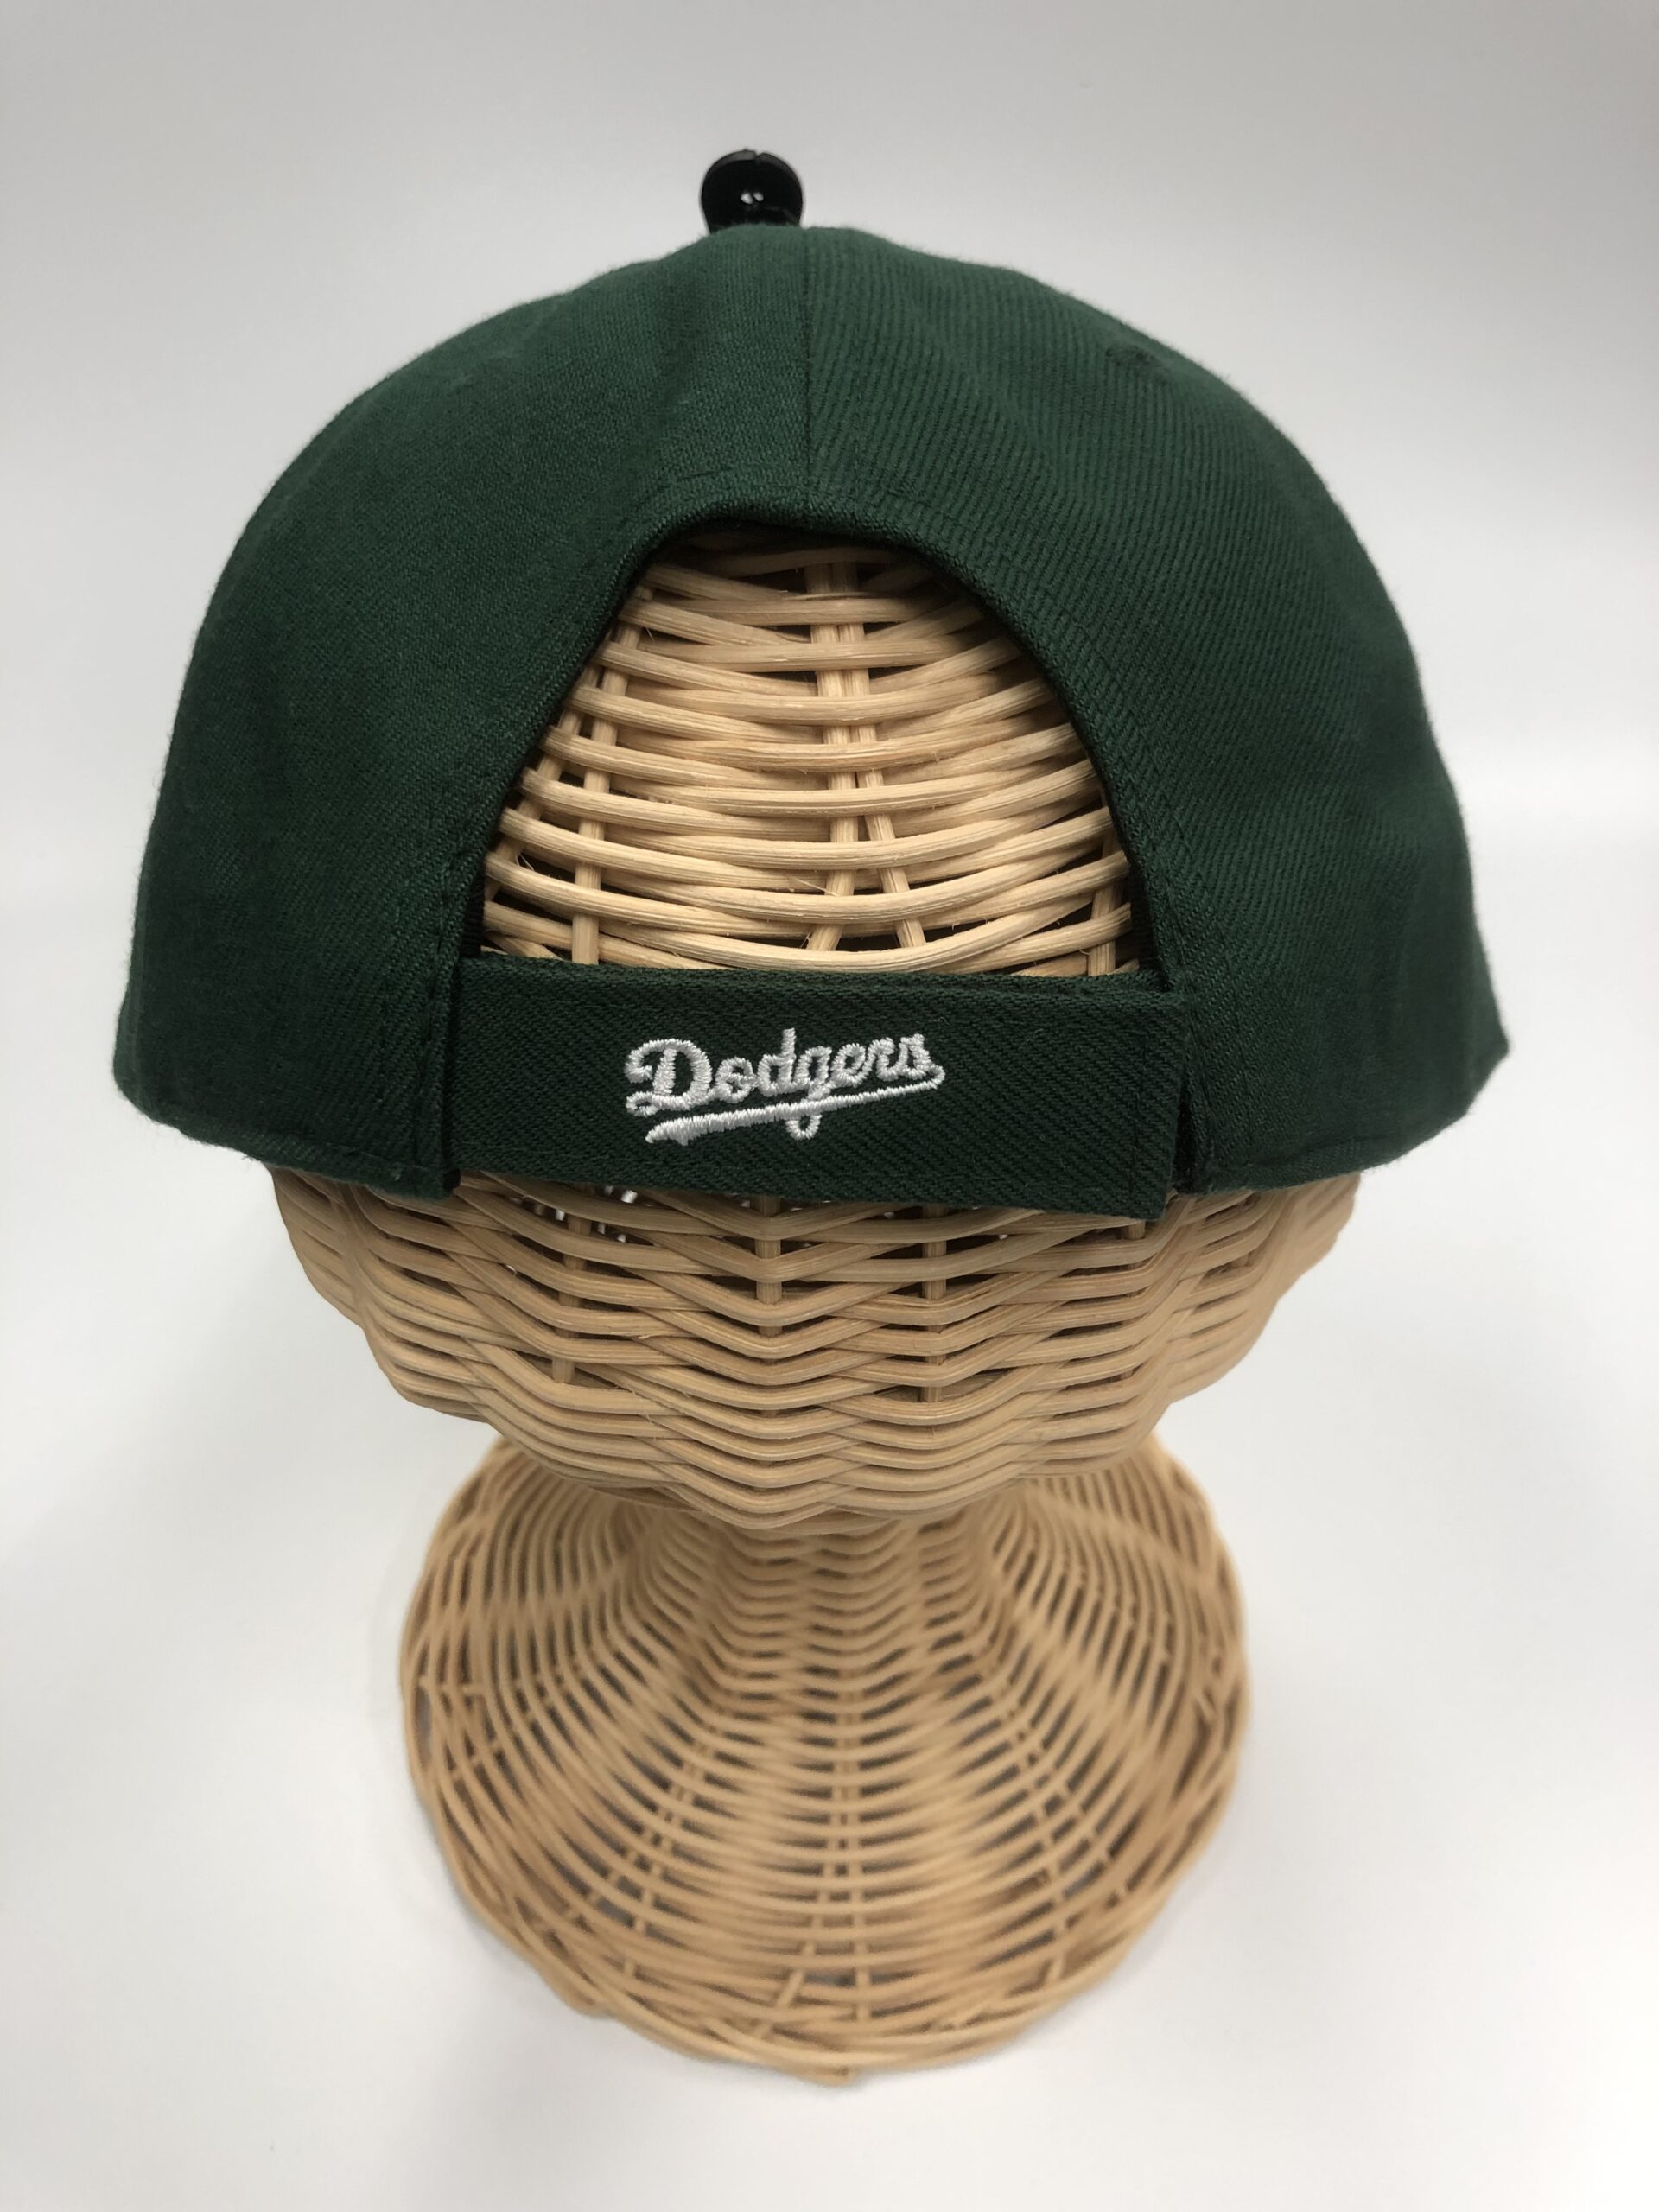 Dodgers’47 MVP Dark Green